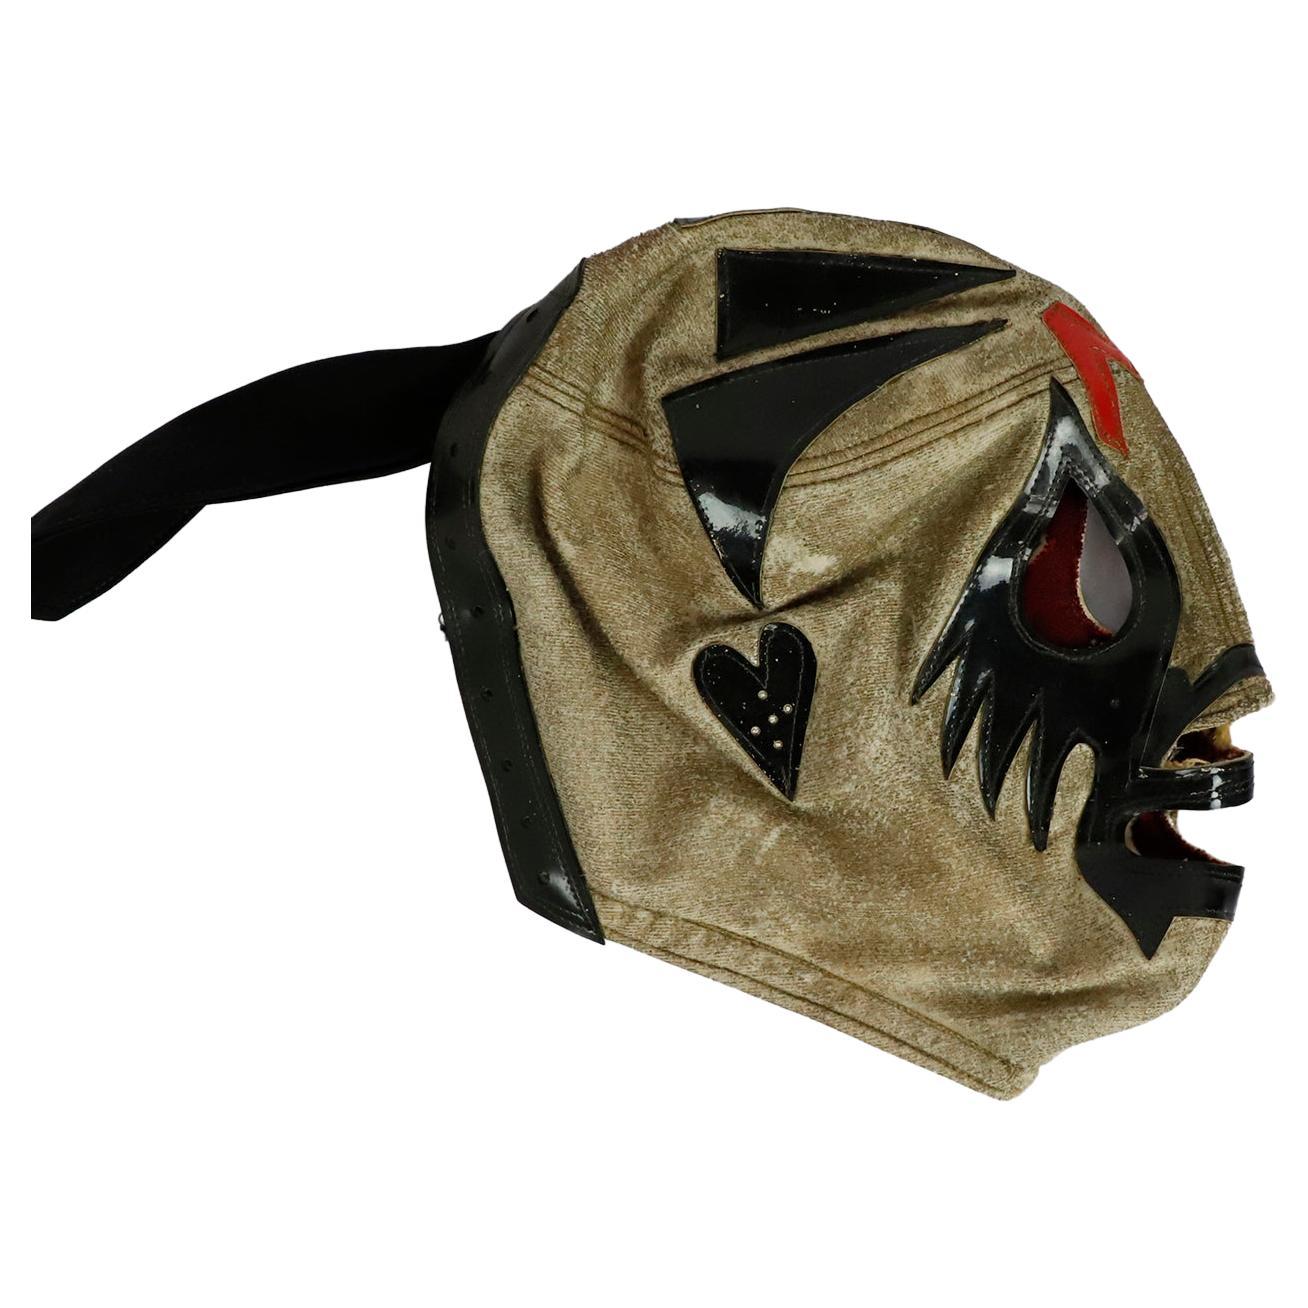 Original Vintage Mexican Wrestling Mask, 'Mil Mascaras' For Sale